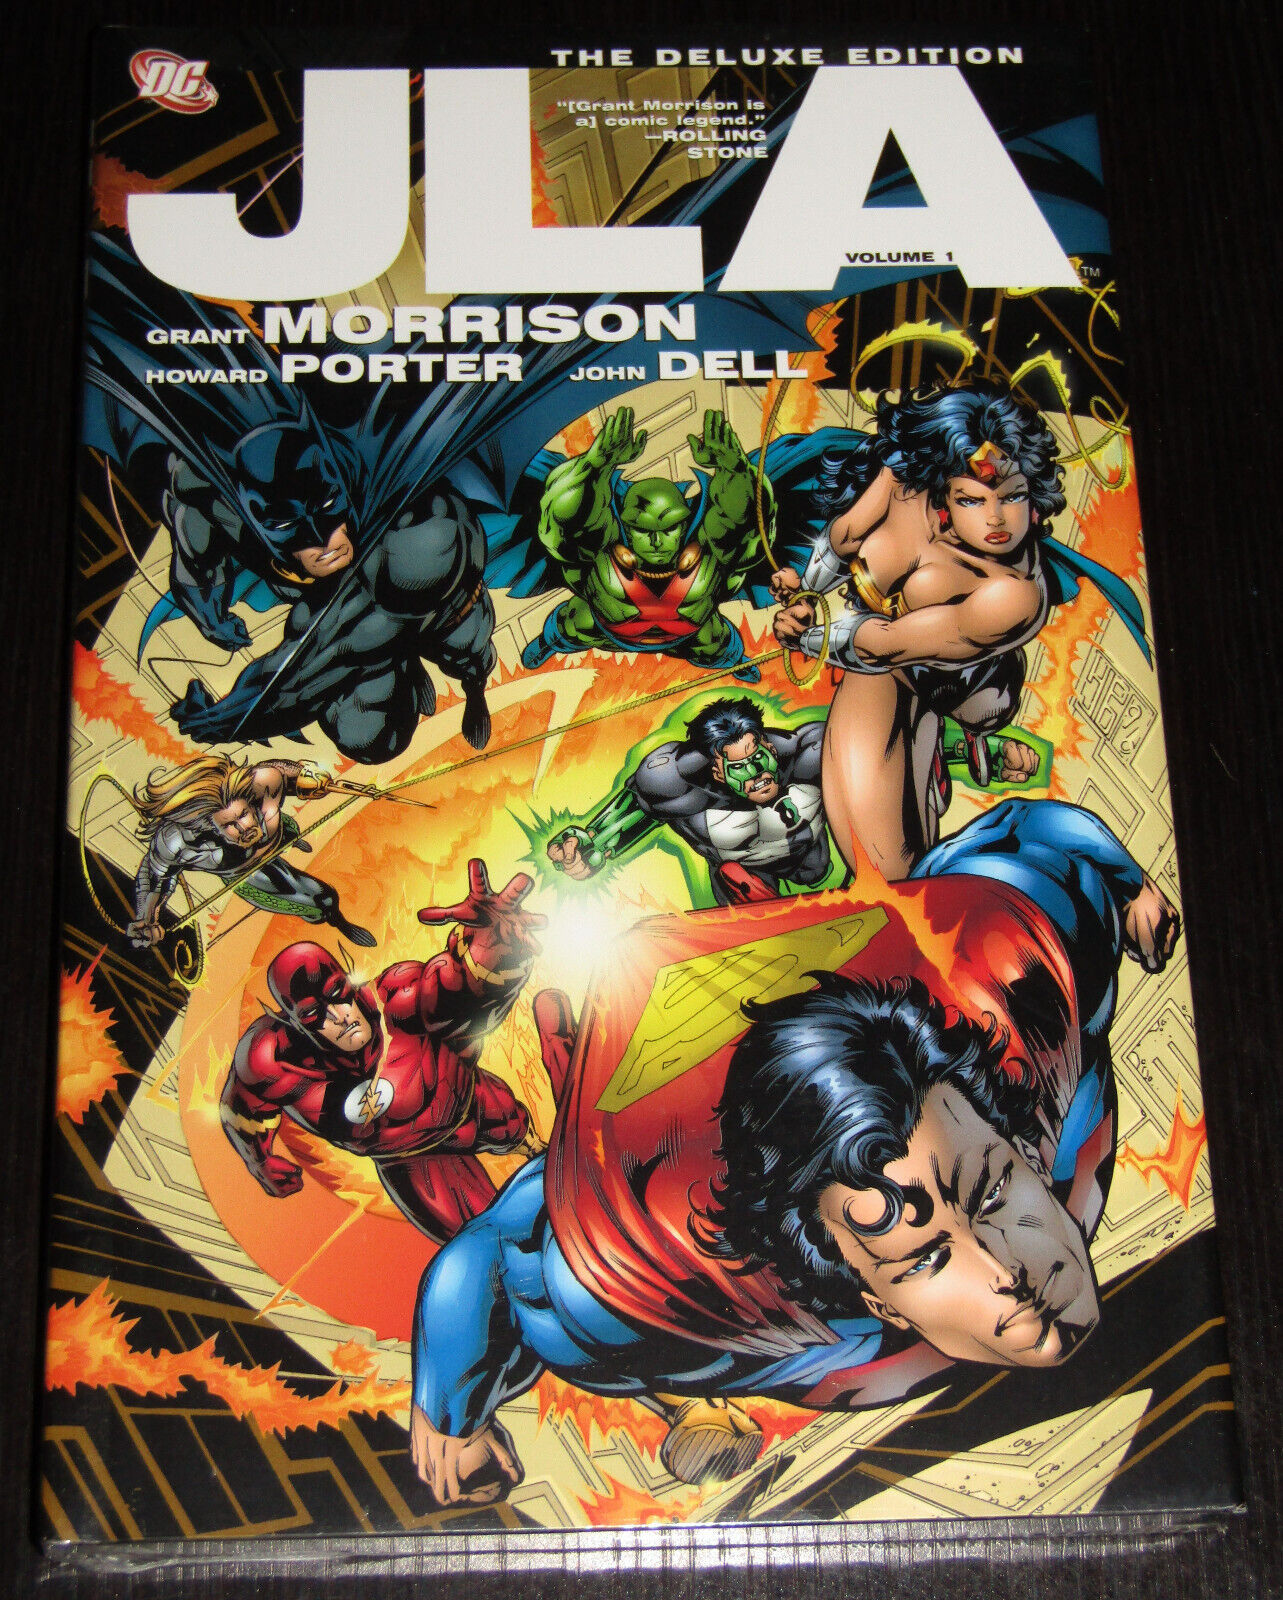 JLA: The Deluxe Edition Vol 1 Hardcover. HC. Grant Morrison, Howard Porter. 2008